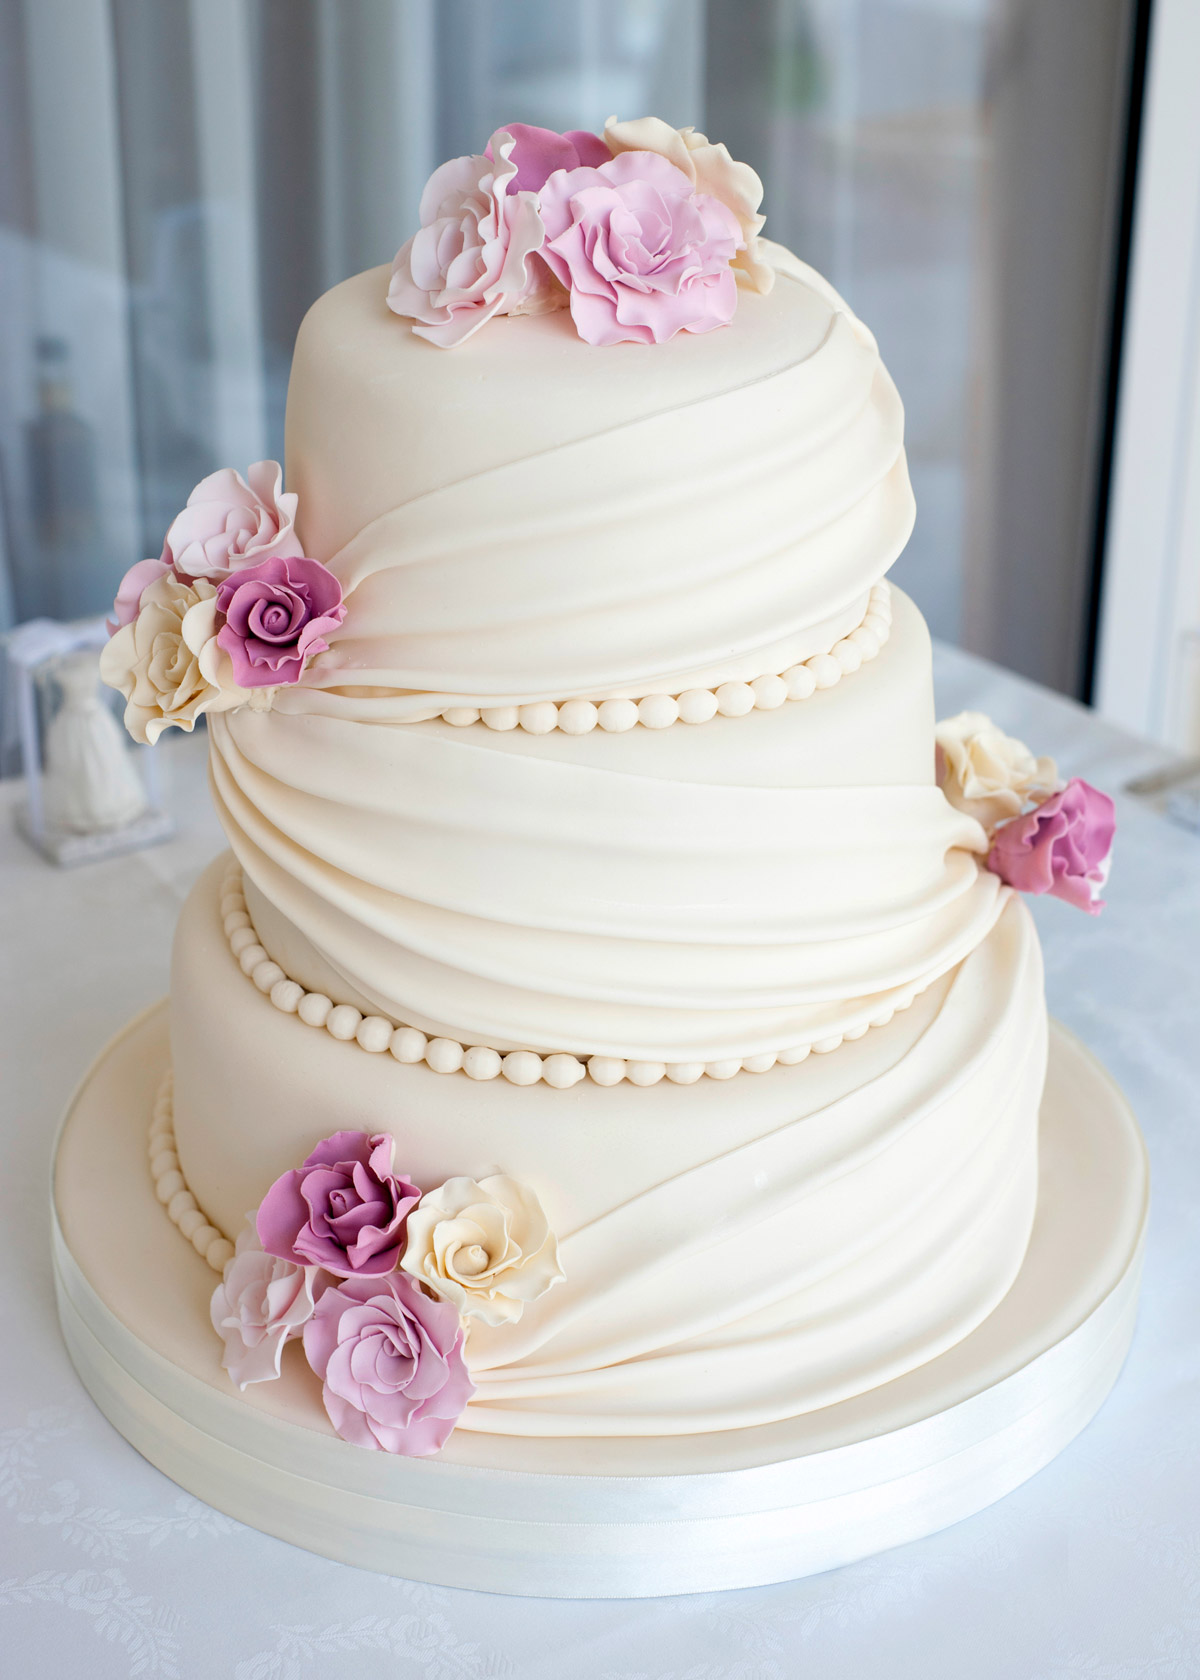 Необычная форма свадебного торта